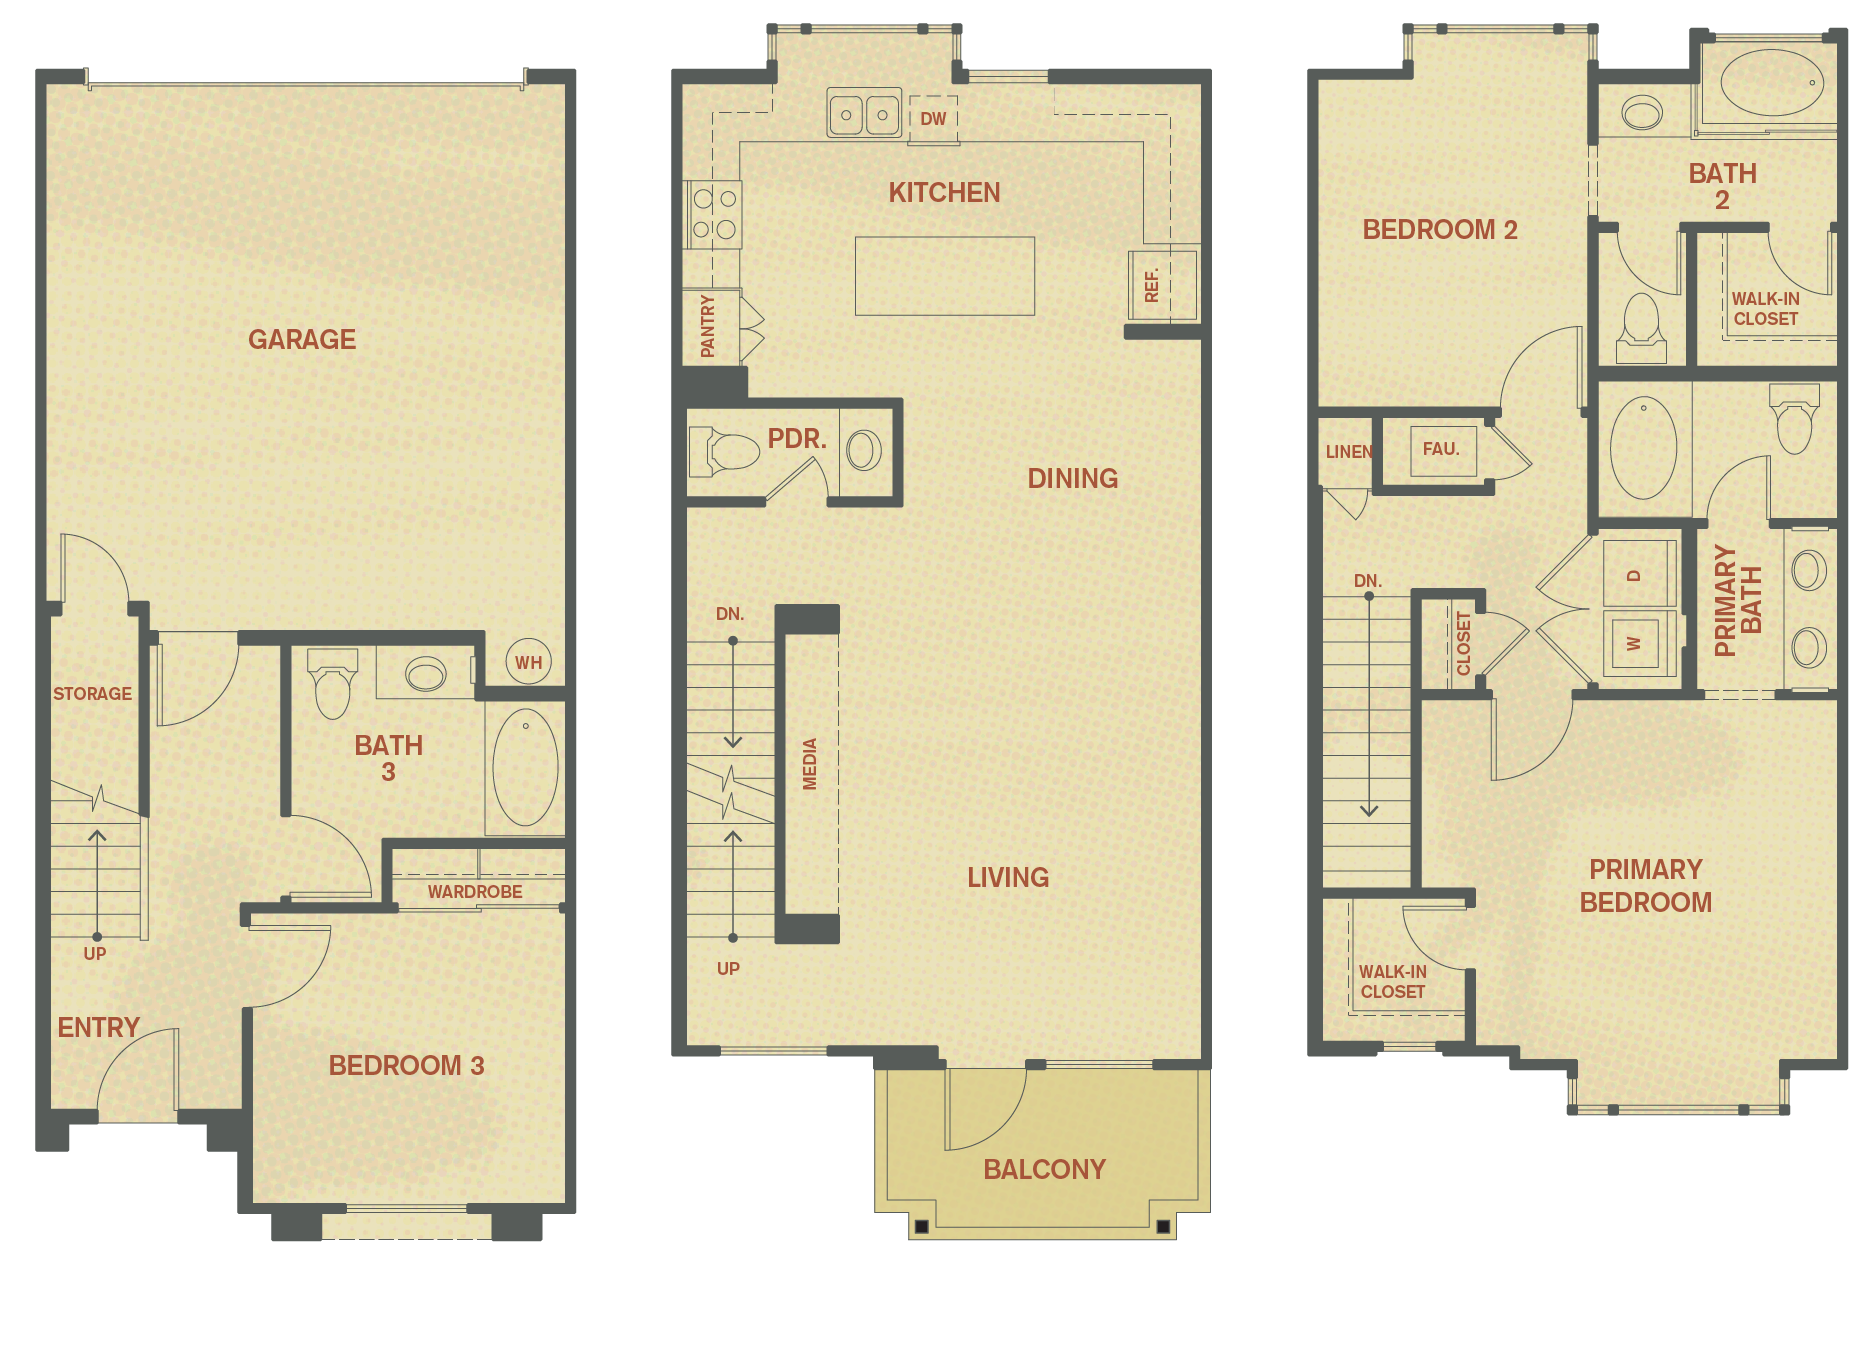 Plan D - 3 Bedroom , 3.5 Bath Floor Plan